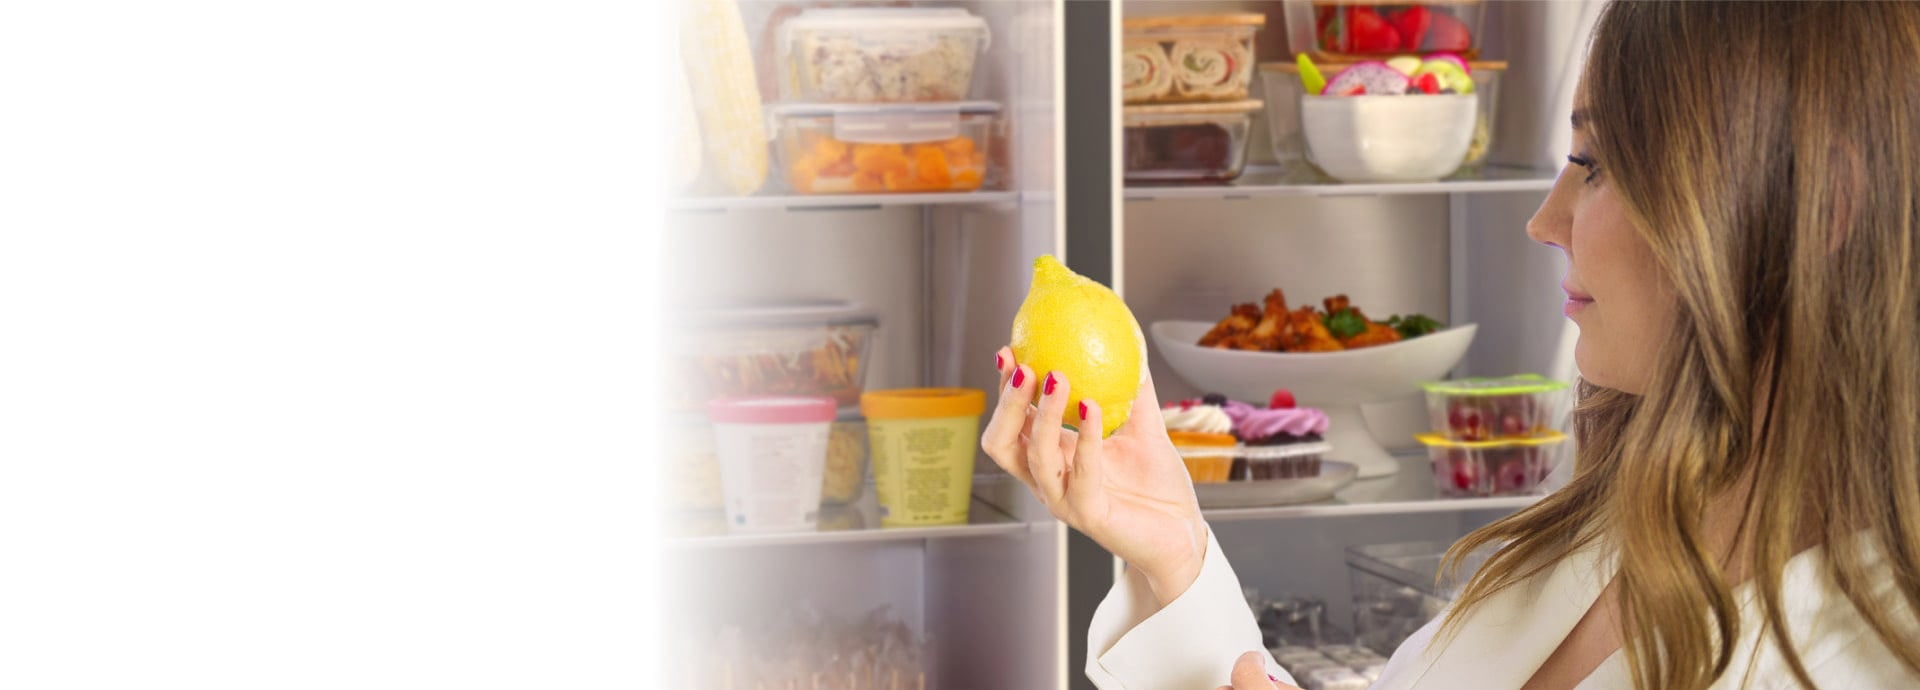 Una donna estrae un limone davanti alla porta aperta del frigorifero LG InstaVeiw American.